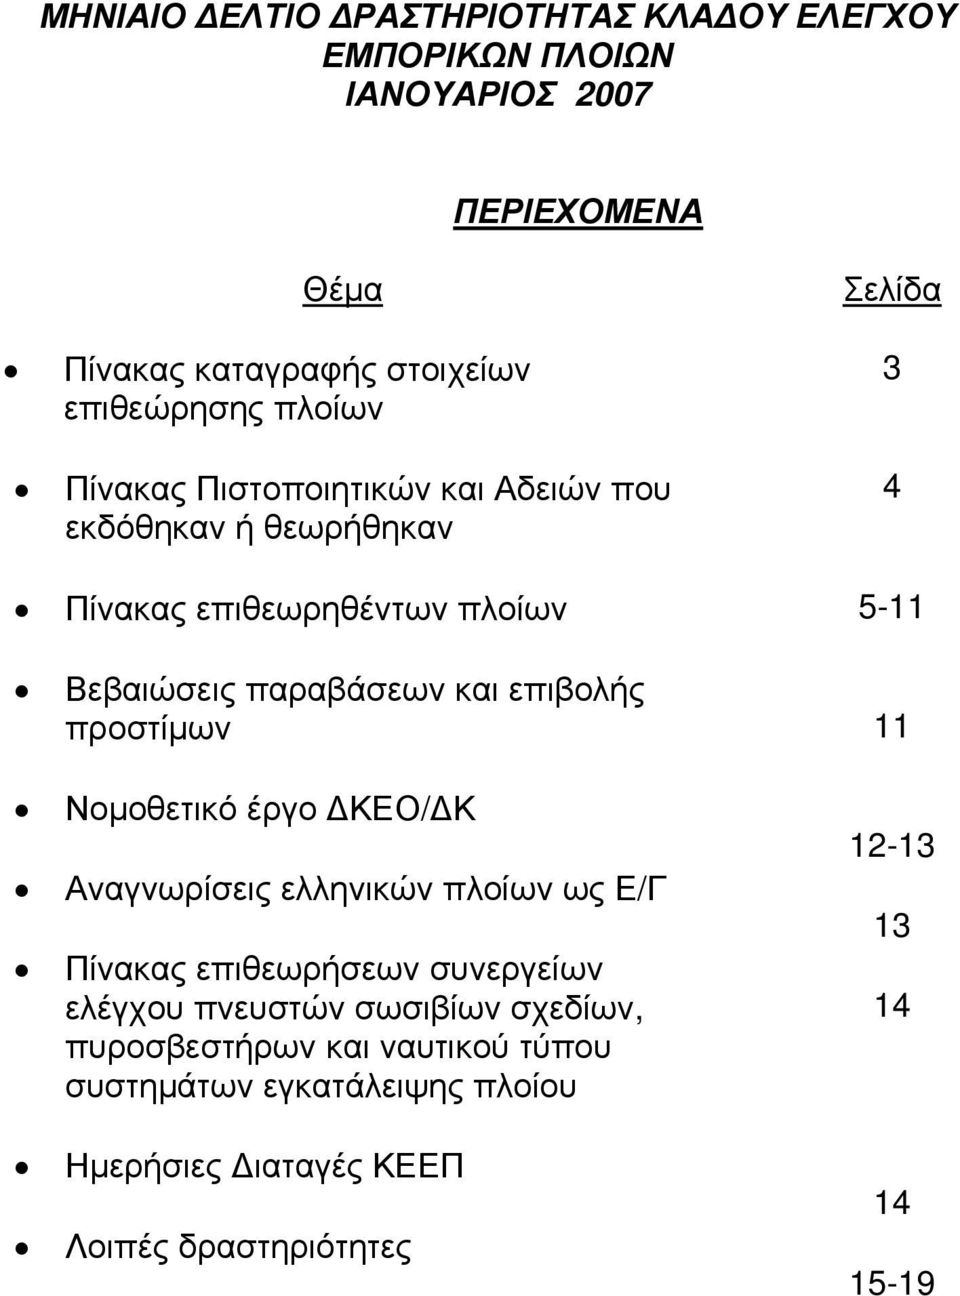 και επιβολής προστίμων 11 Νομοθετικό έργο ΔΚΕΟ/ΔΚ Αναγνωρίσεις ελληνικών πλοίων ως Ε/Γ Πίνακας επιθεωρήσεων συνεργείων ελέγχου πνευστών